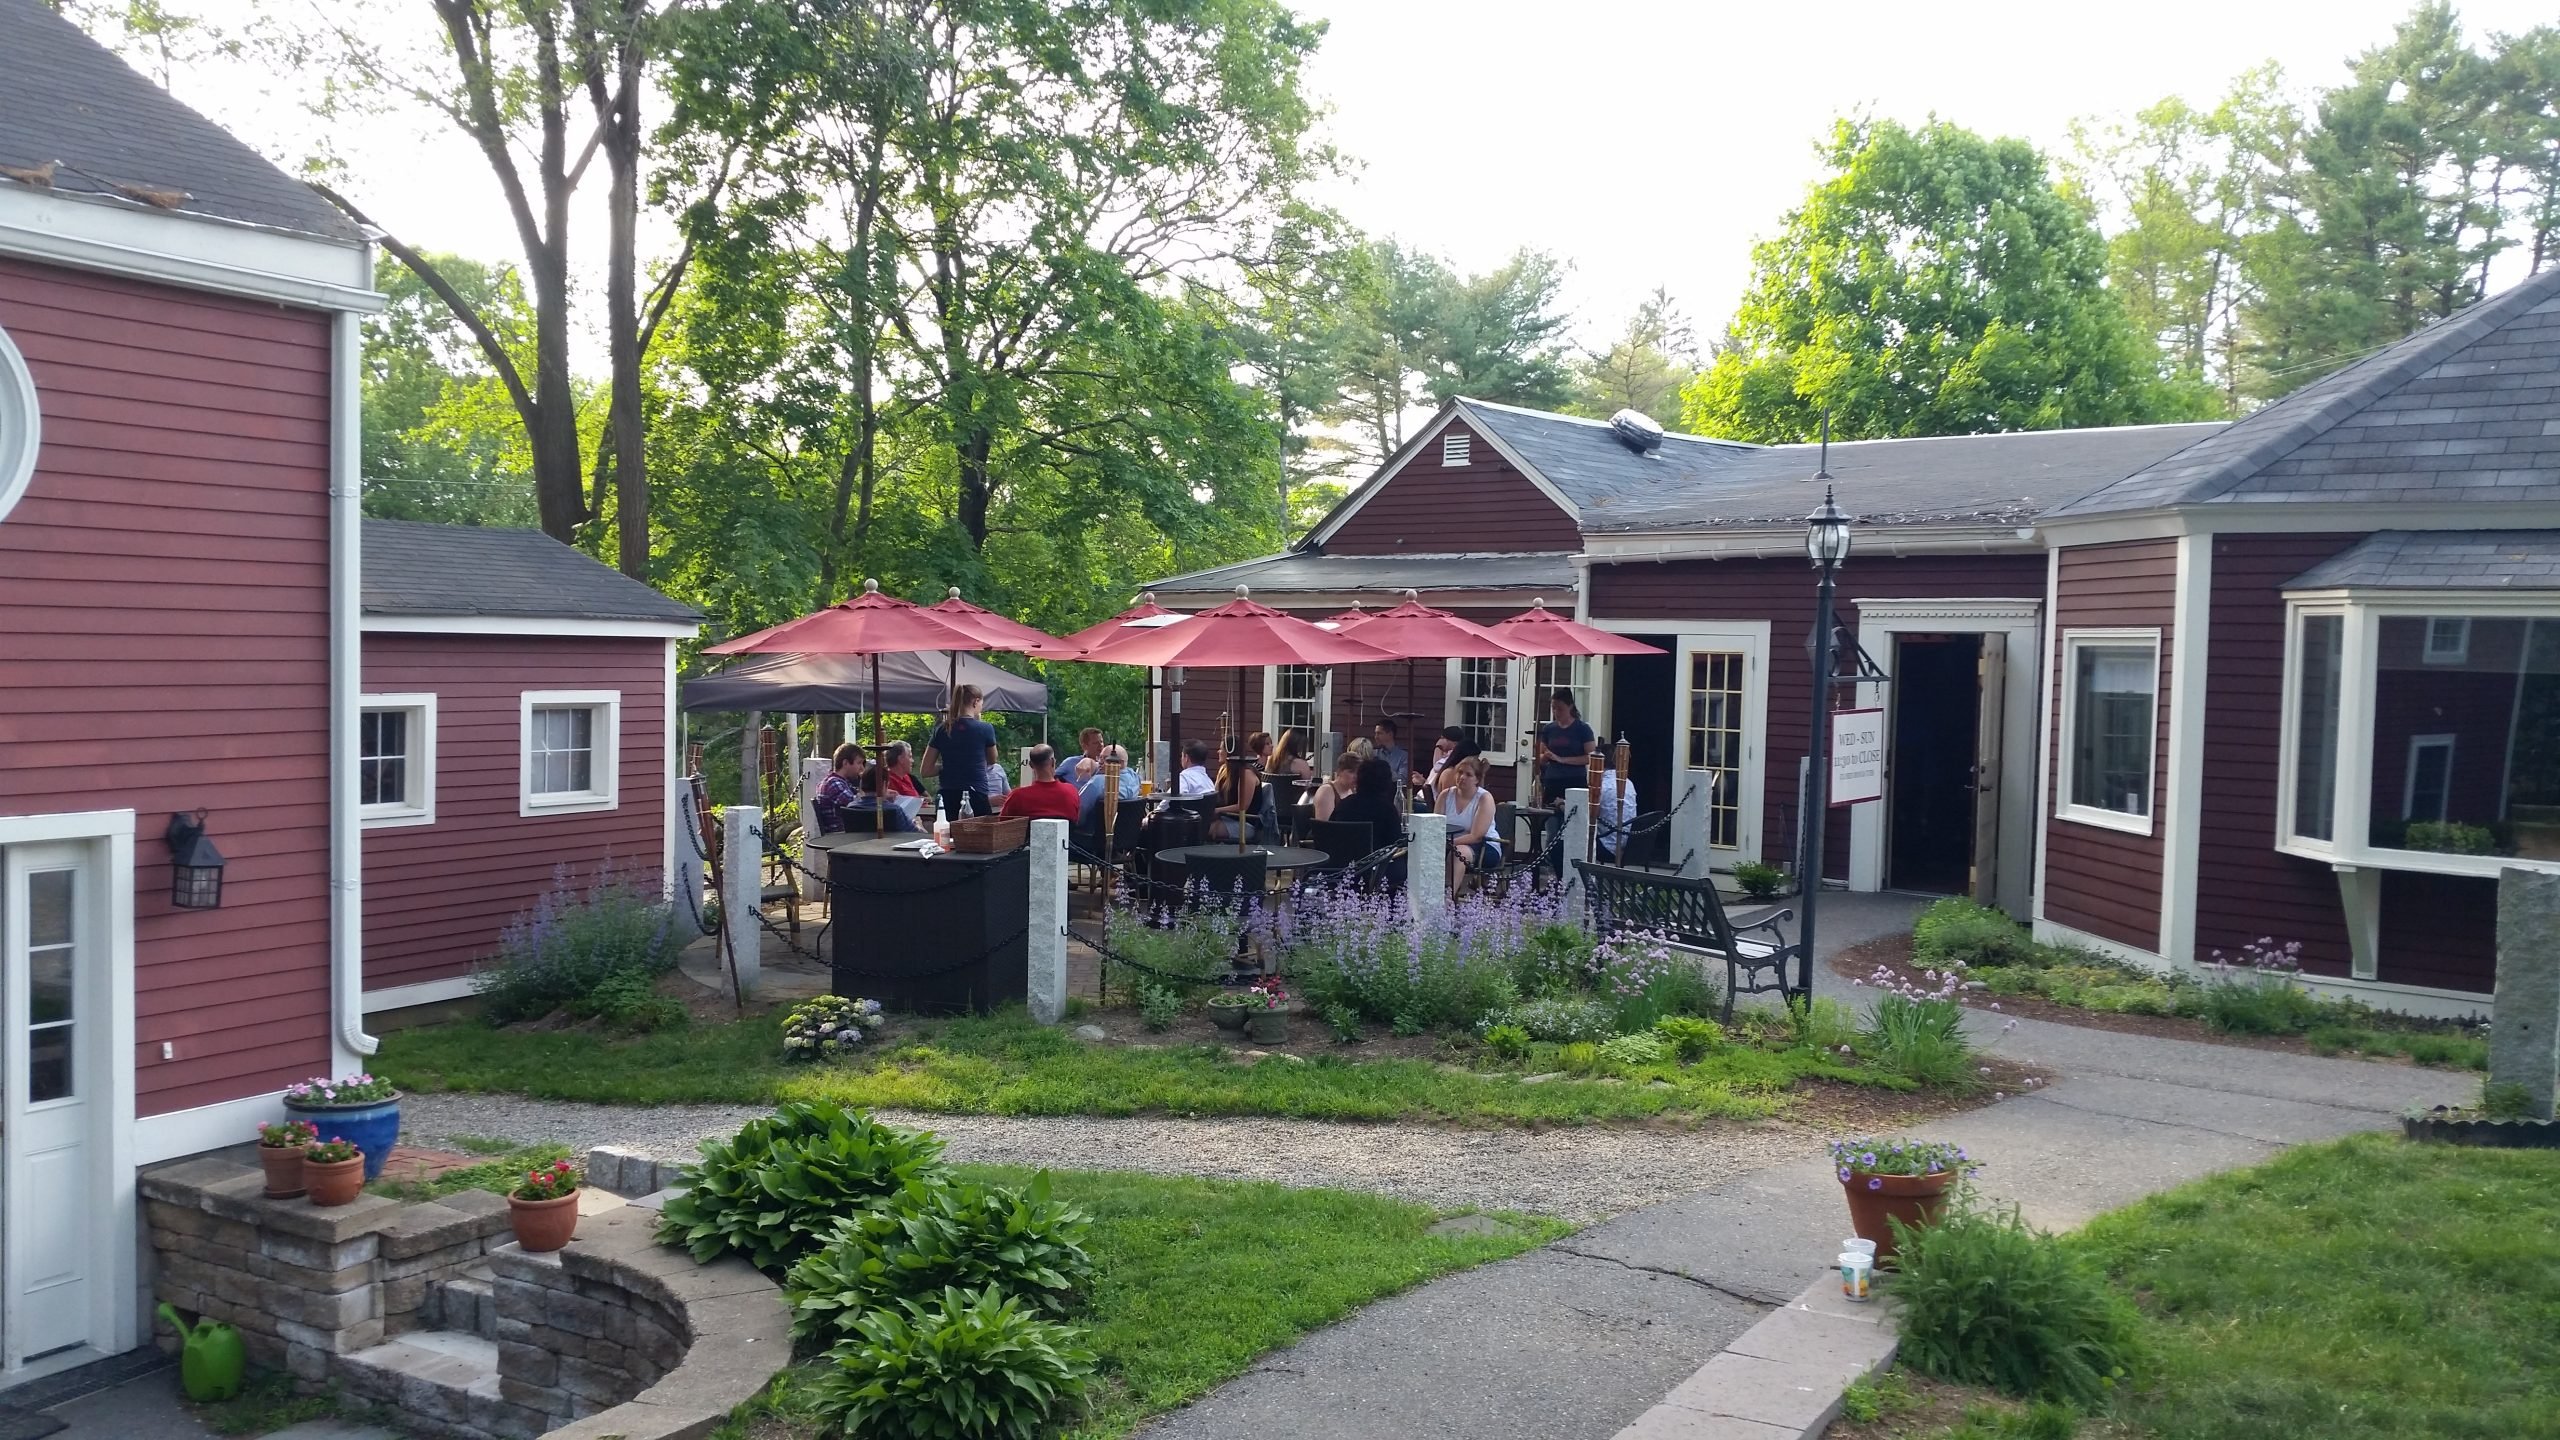 Rapscallion outdoor dining in Acton, MA (outdoor restaurants in Boston suburbs)